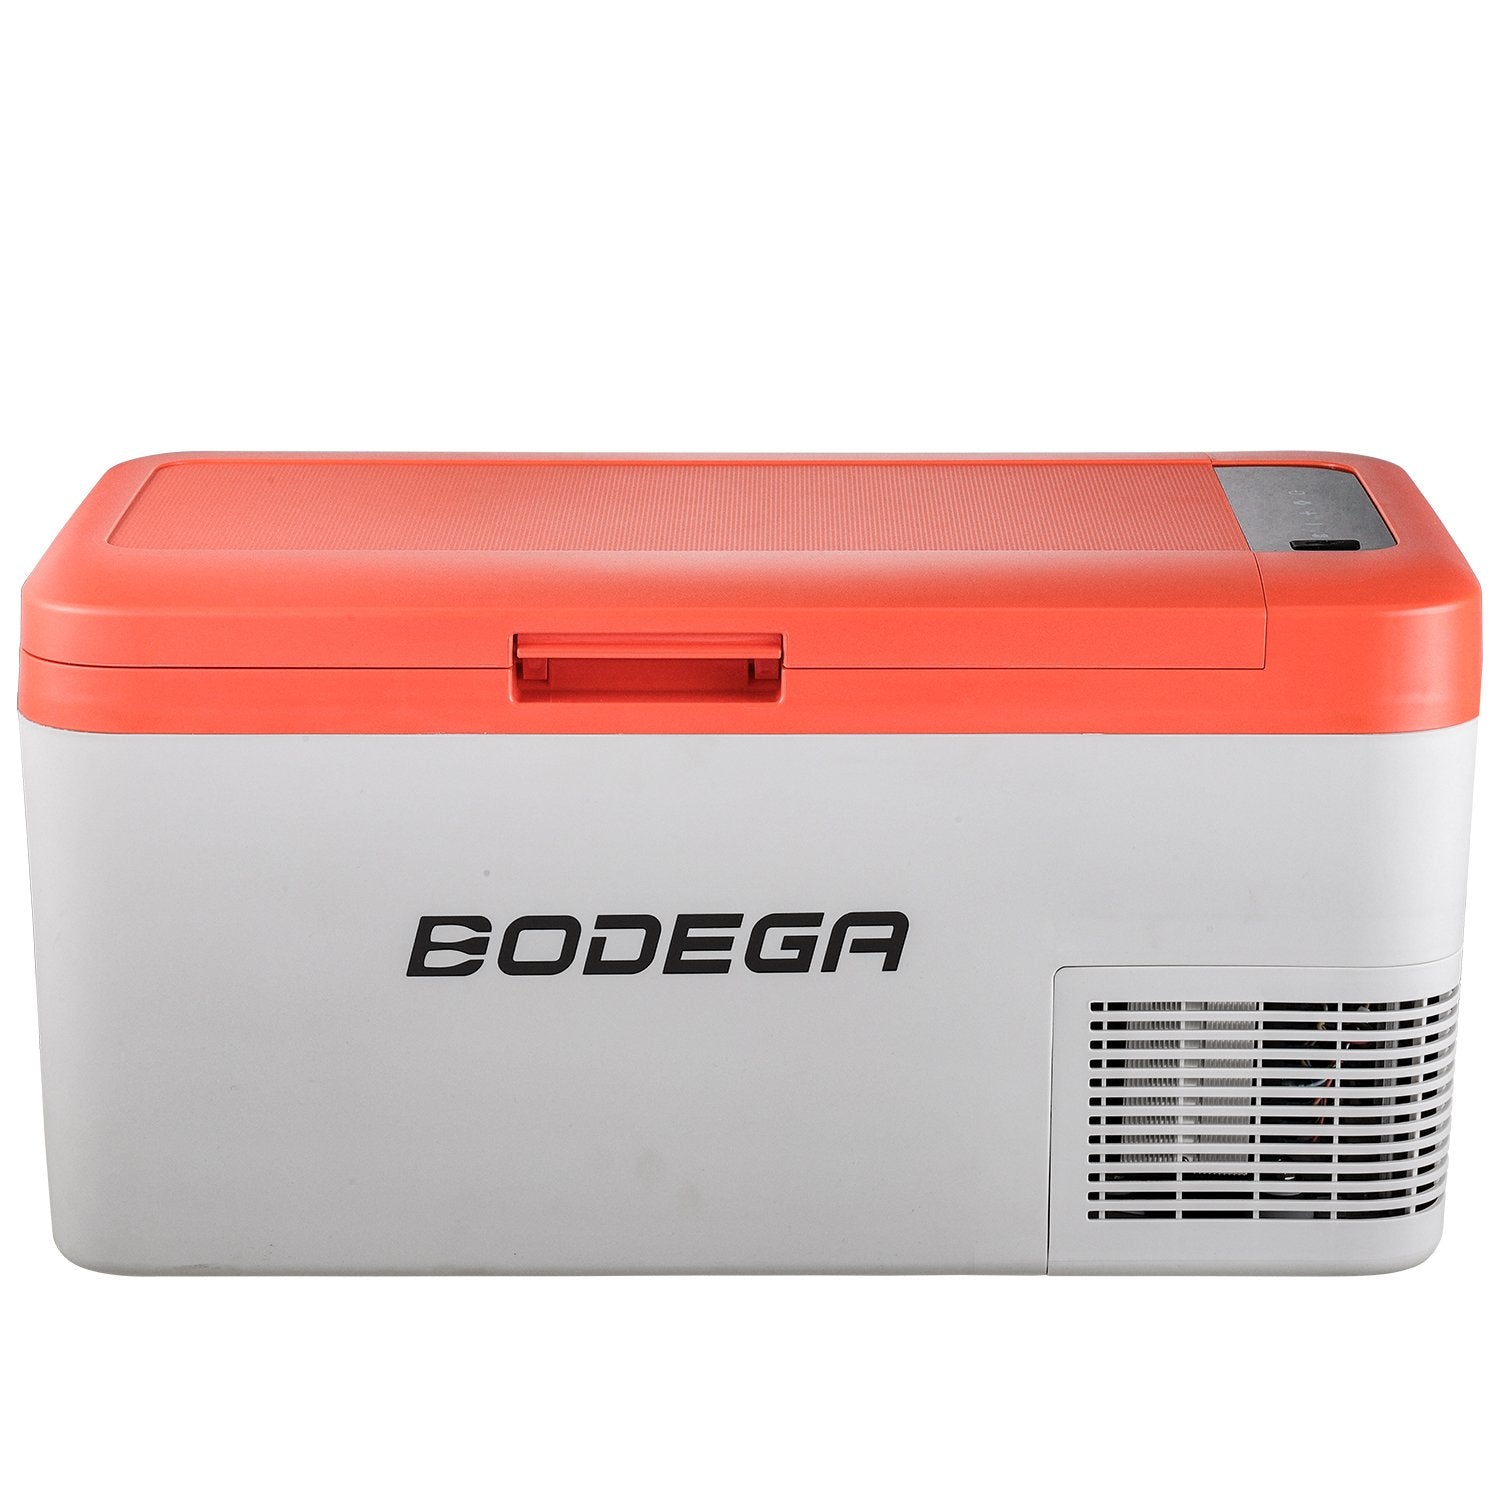 BODEGAcooler 27qt/25L K25 12V Portable Car Fridge Freezer - Orange